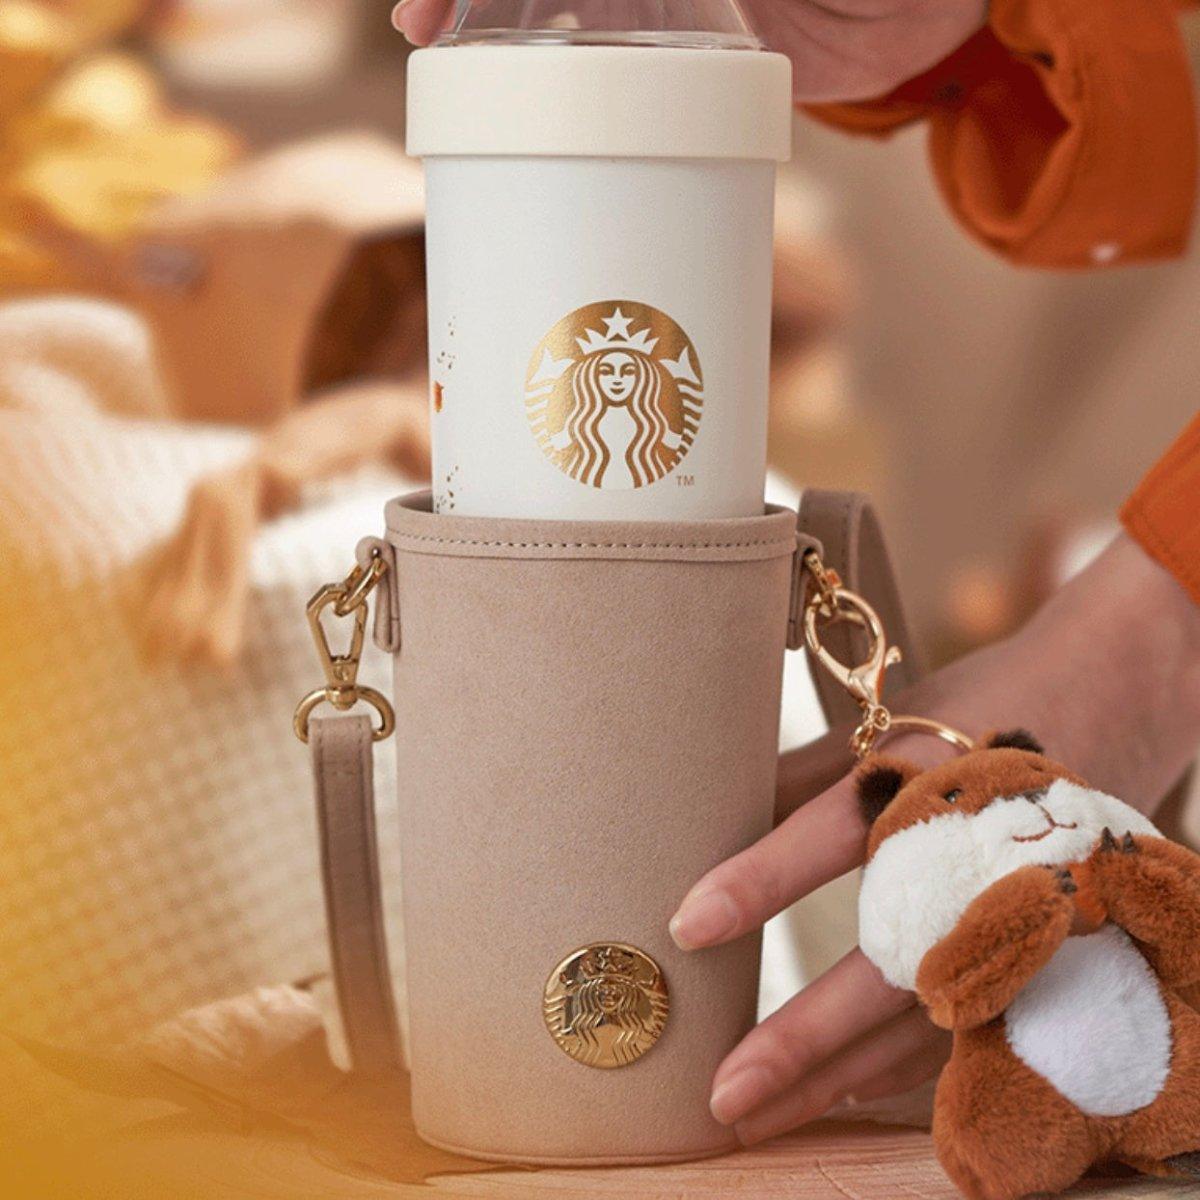 590ml/20oz Warm Autumn Novel Style Stainless Steel Cup with Starbucks Logo Bottle Holder - Ann Ann Starbucks